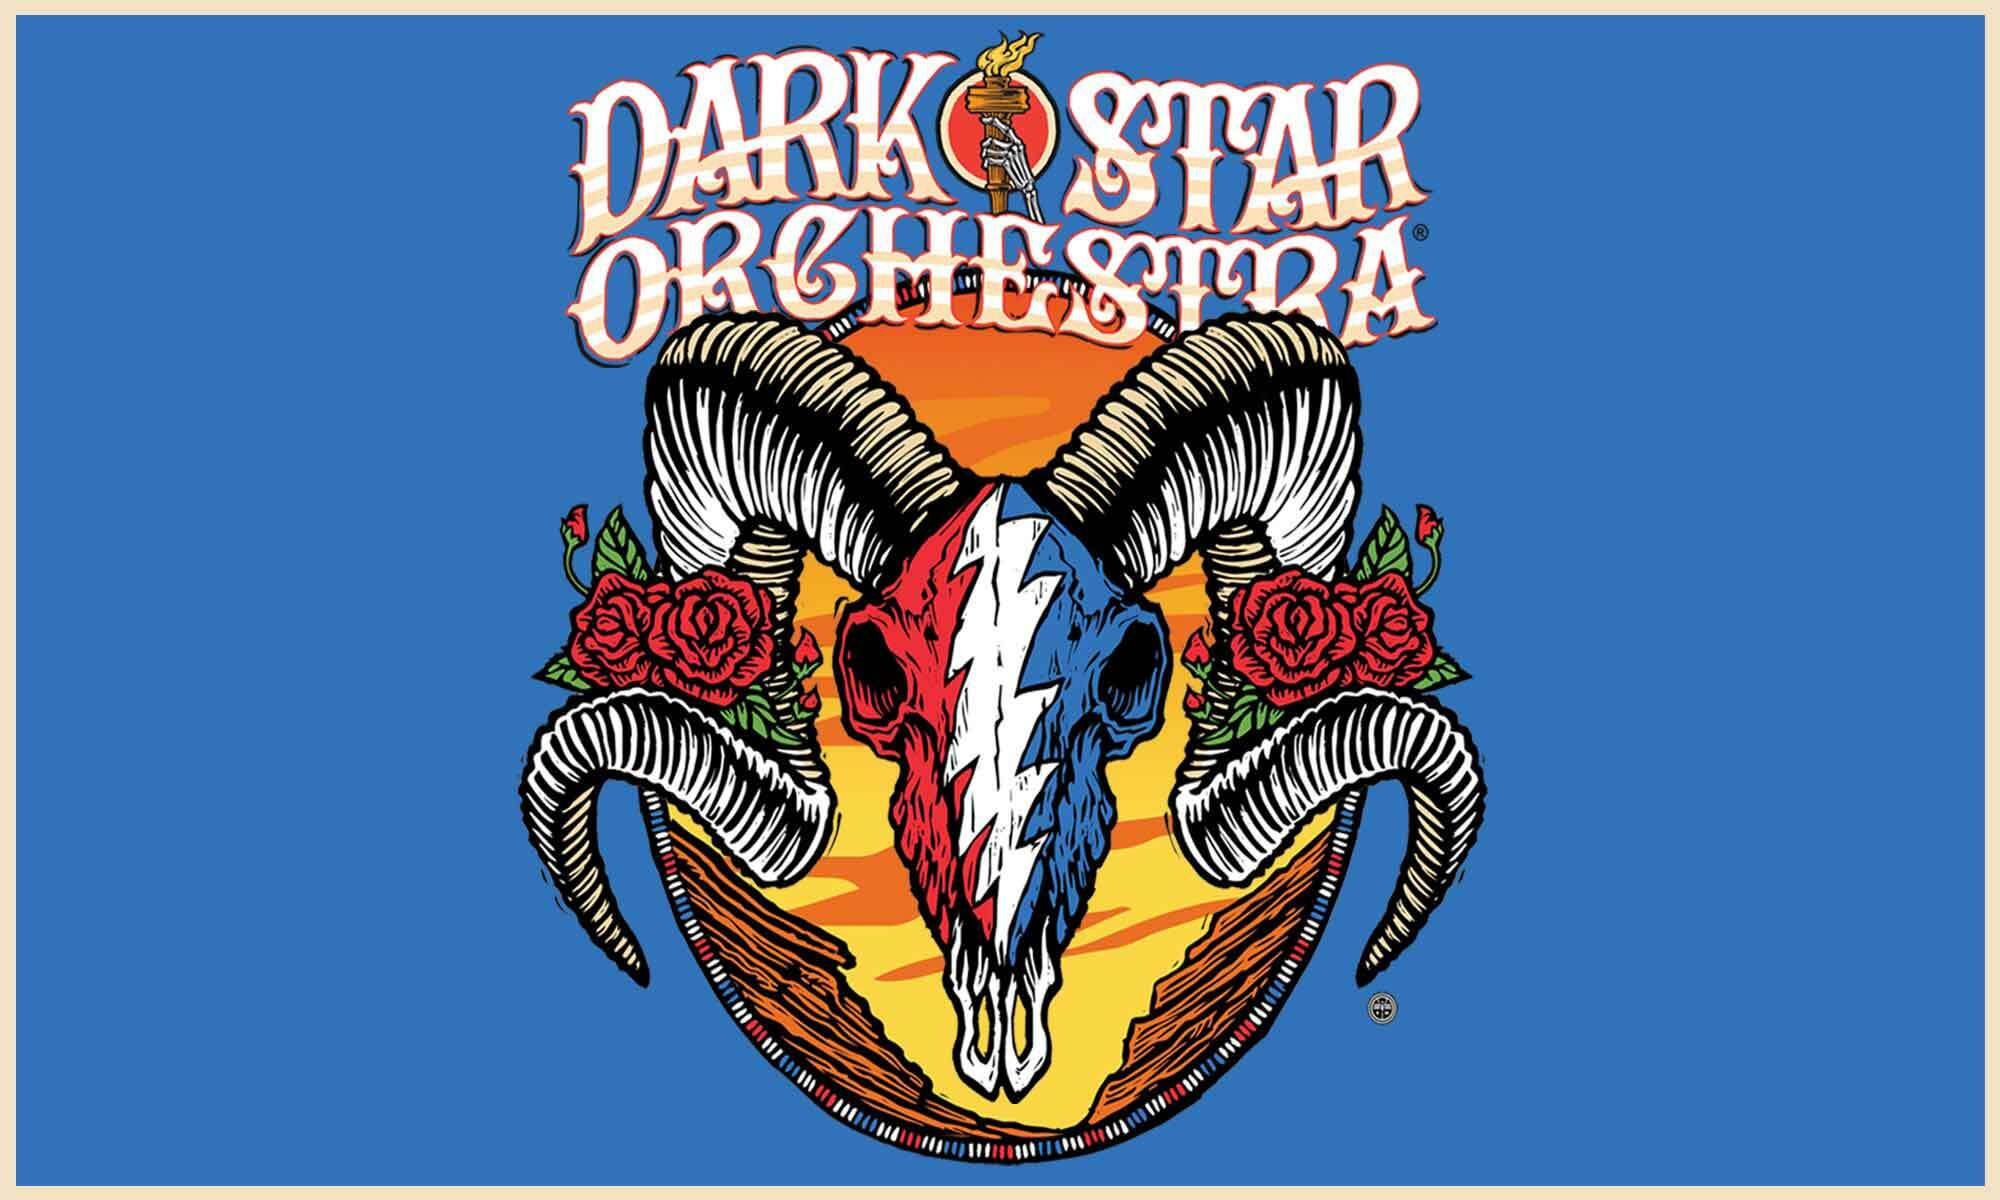 Dark Star Orchestra Live Concert